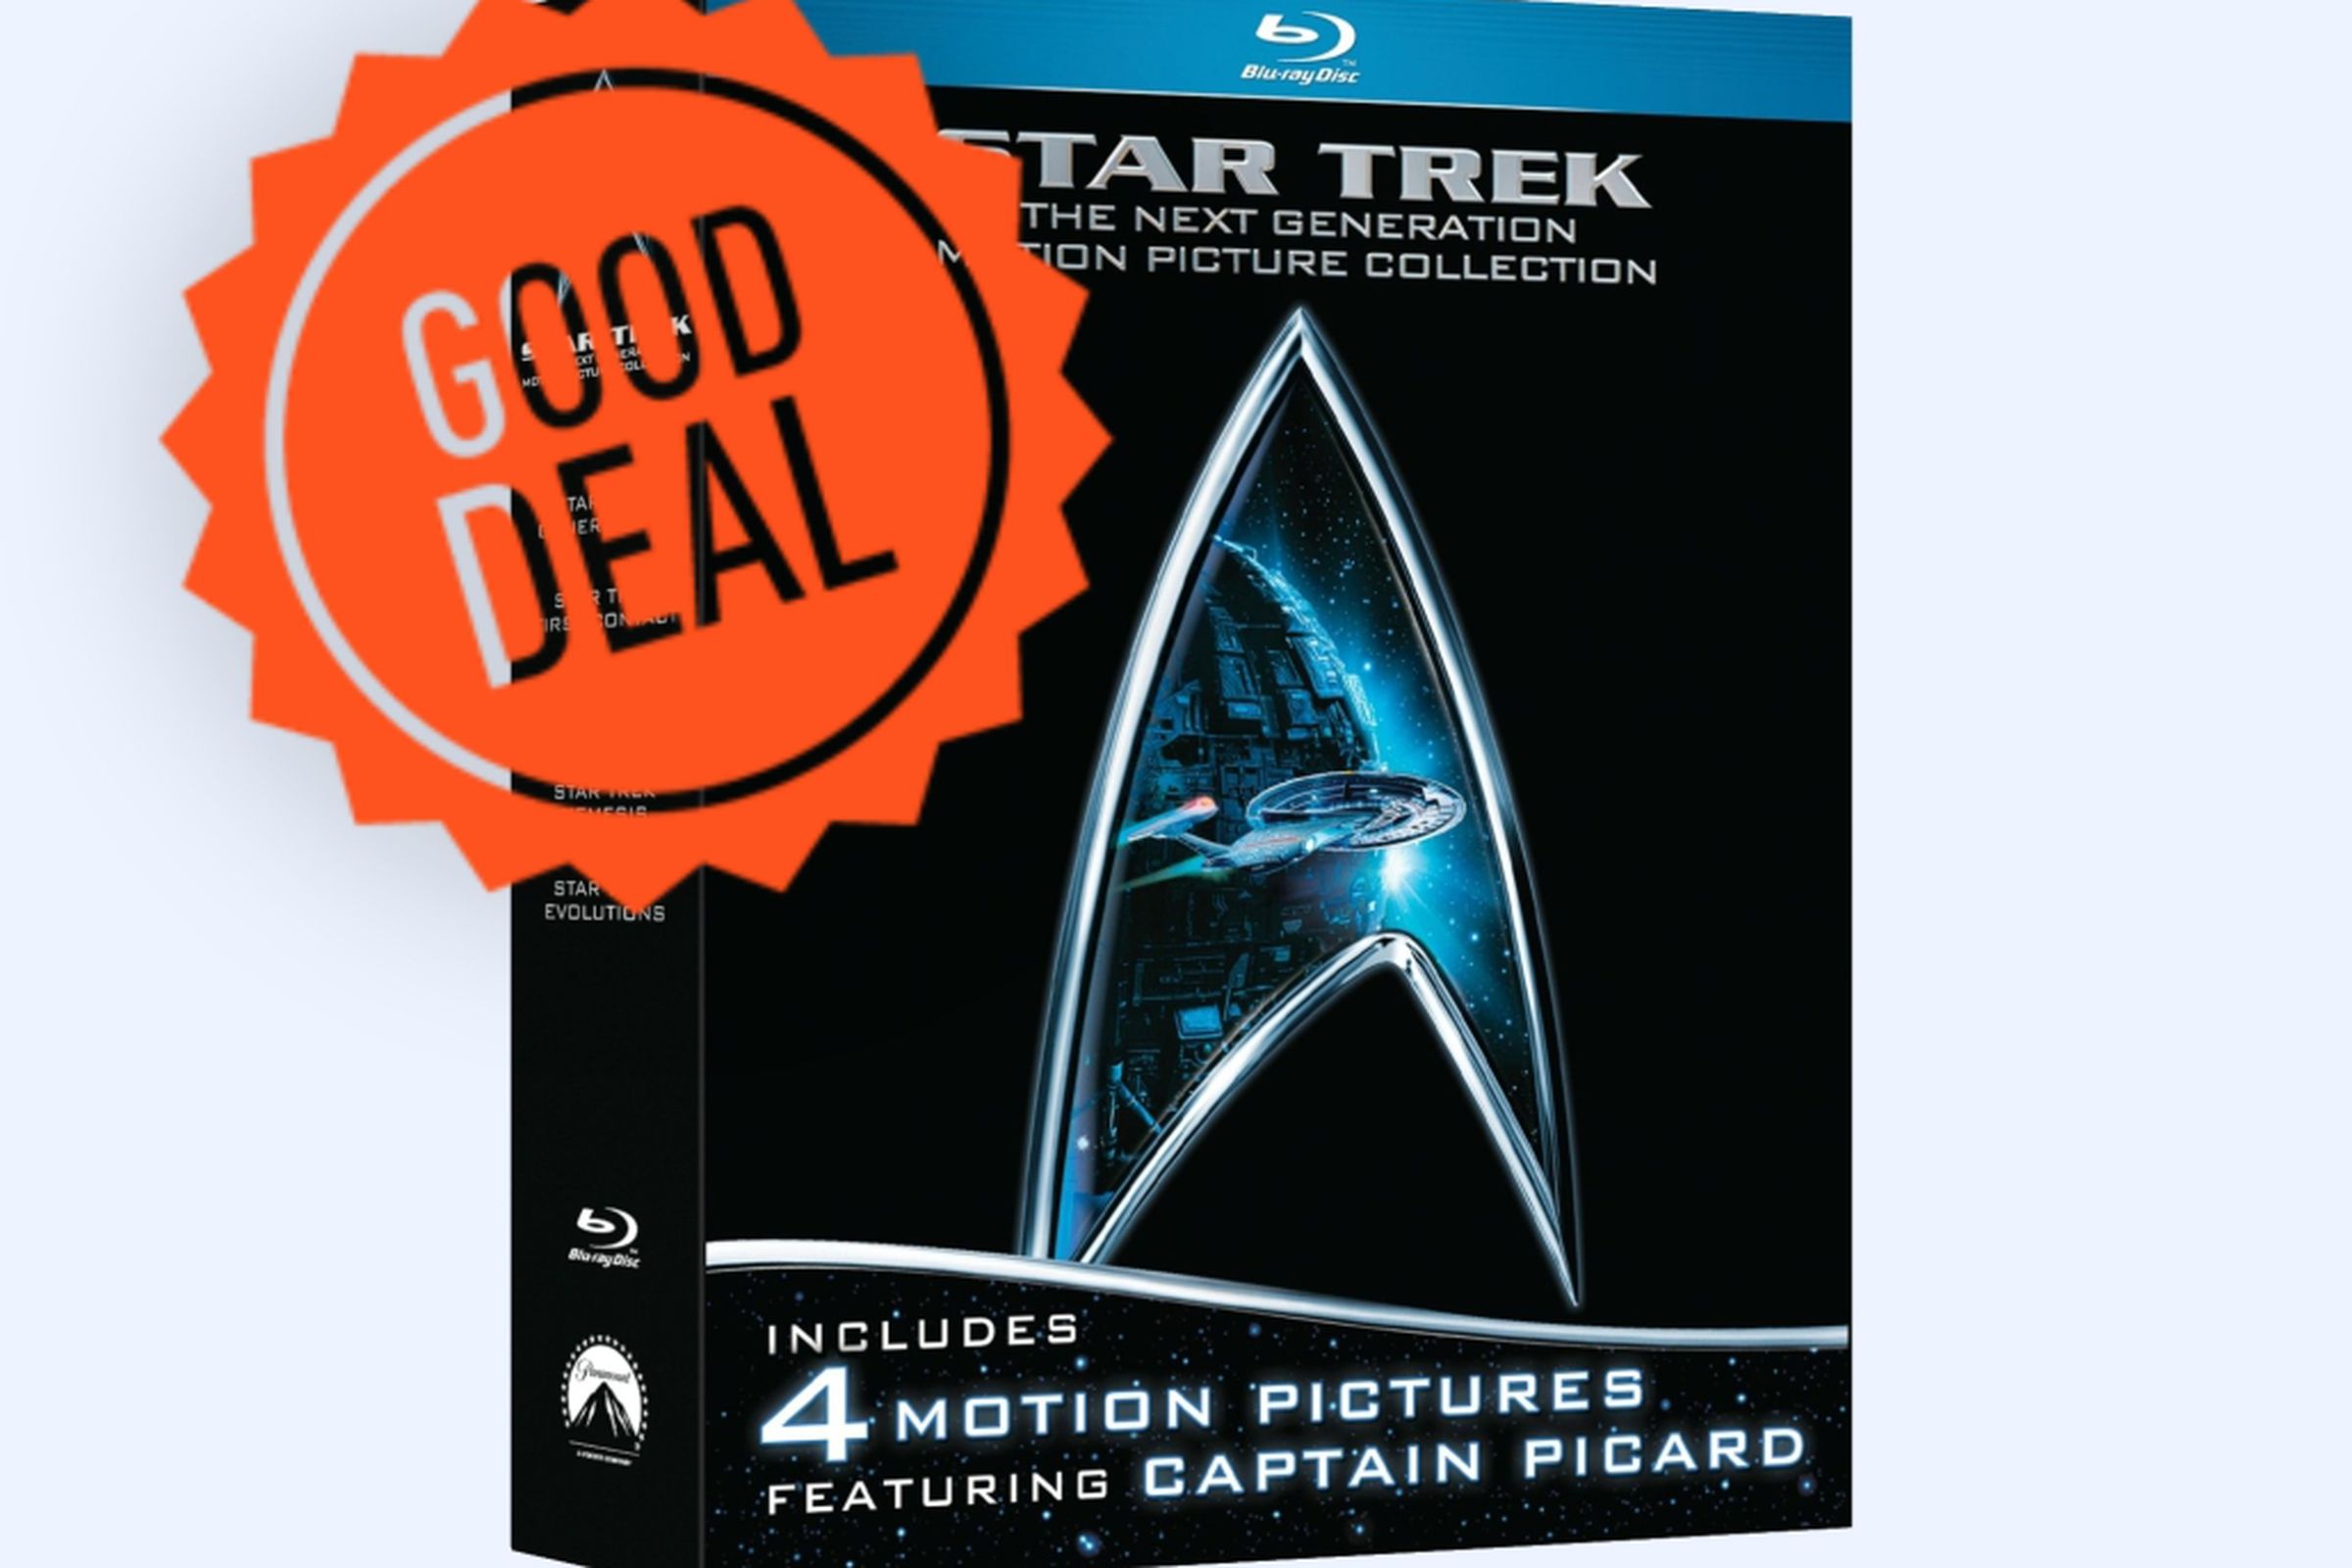 Star Trek Good Deal